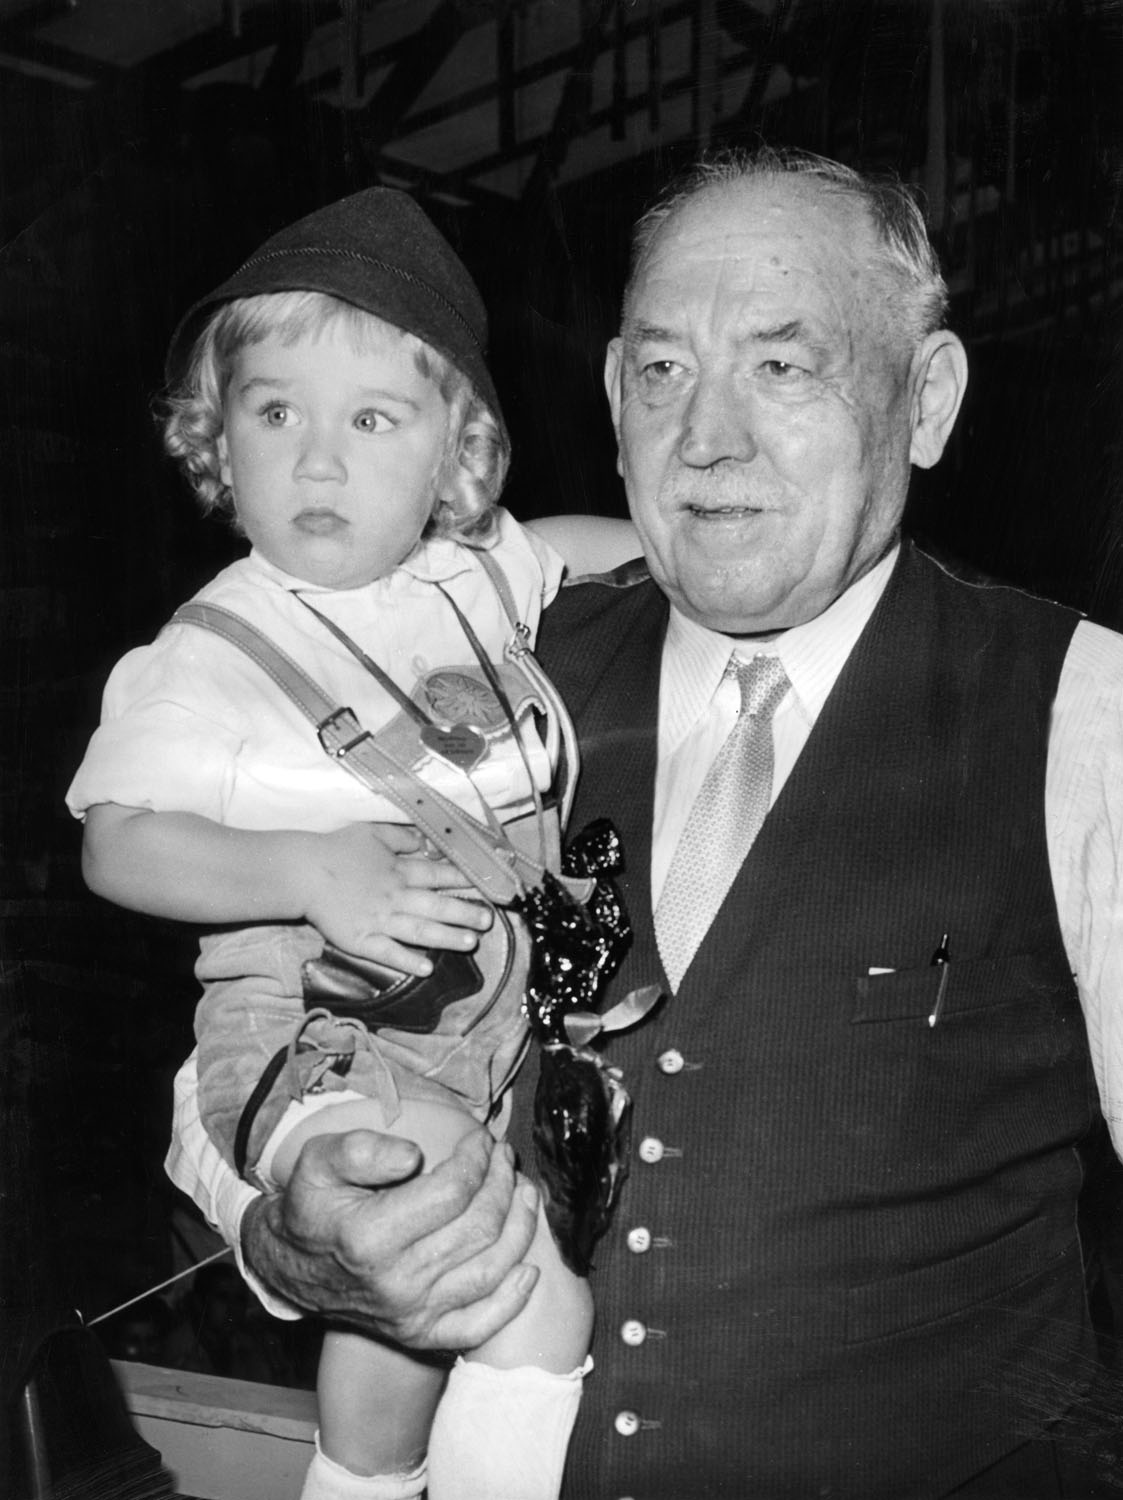 Schwarz-Weiß-Fotografie eines Mannes der ein Kleinkind auf dem Arm hält.